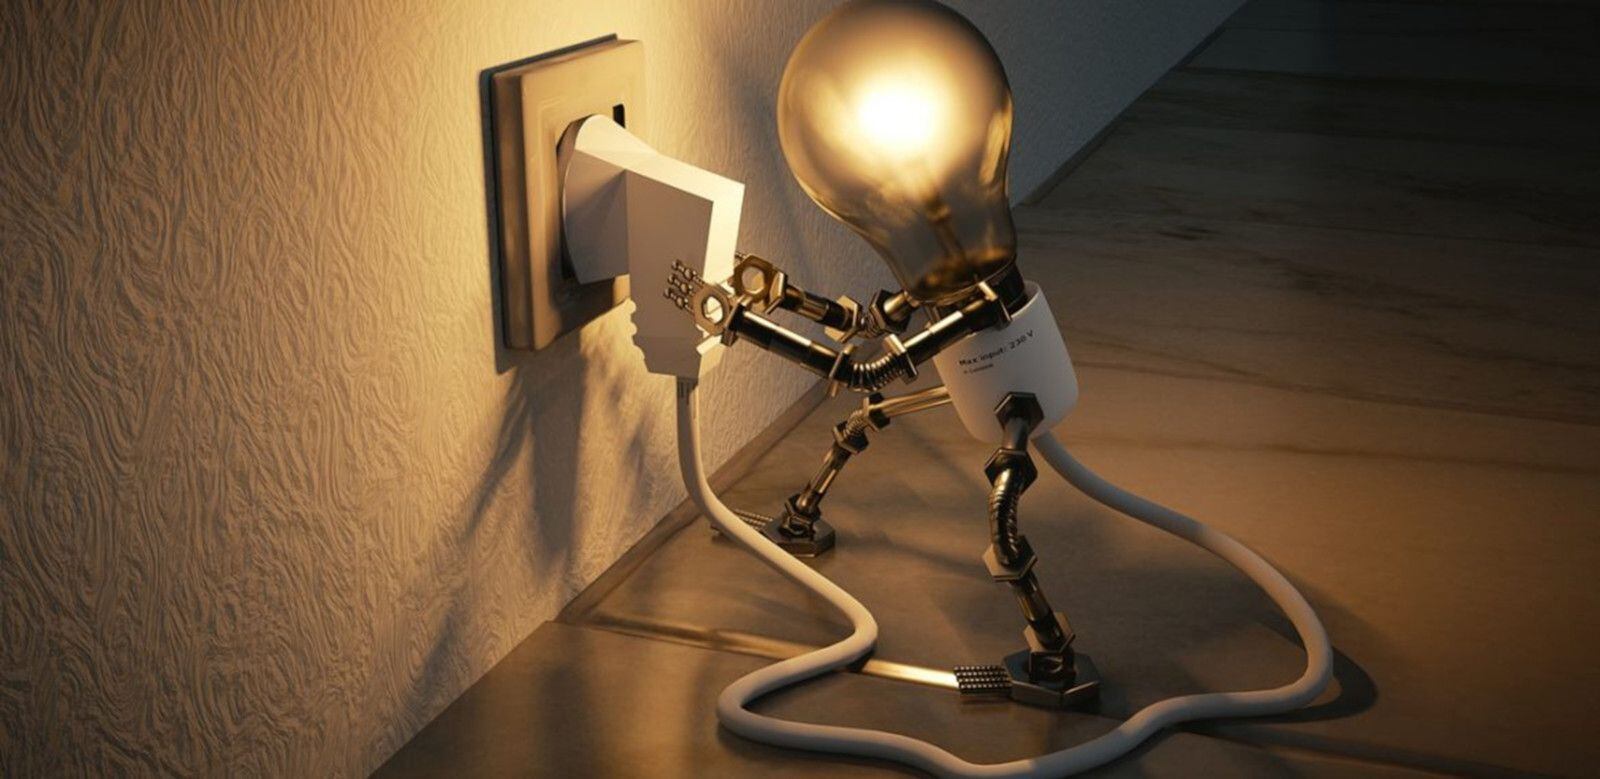 Imagen ilustrativa para ahorrar energía en casa. (foto: Encyclopedié)